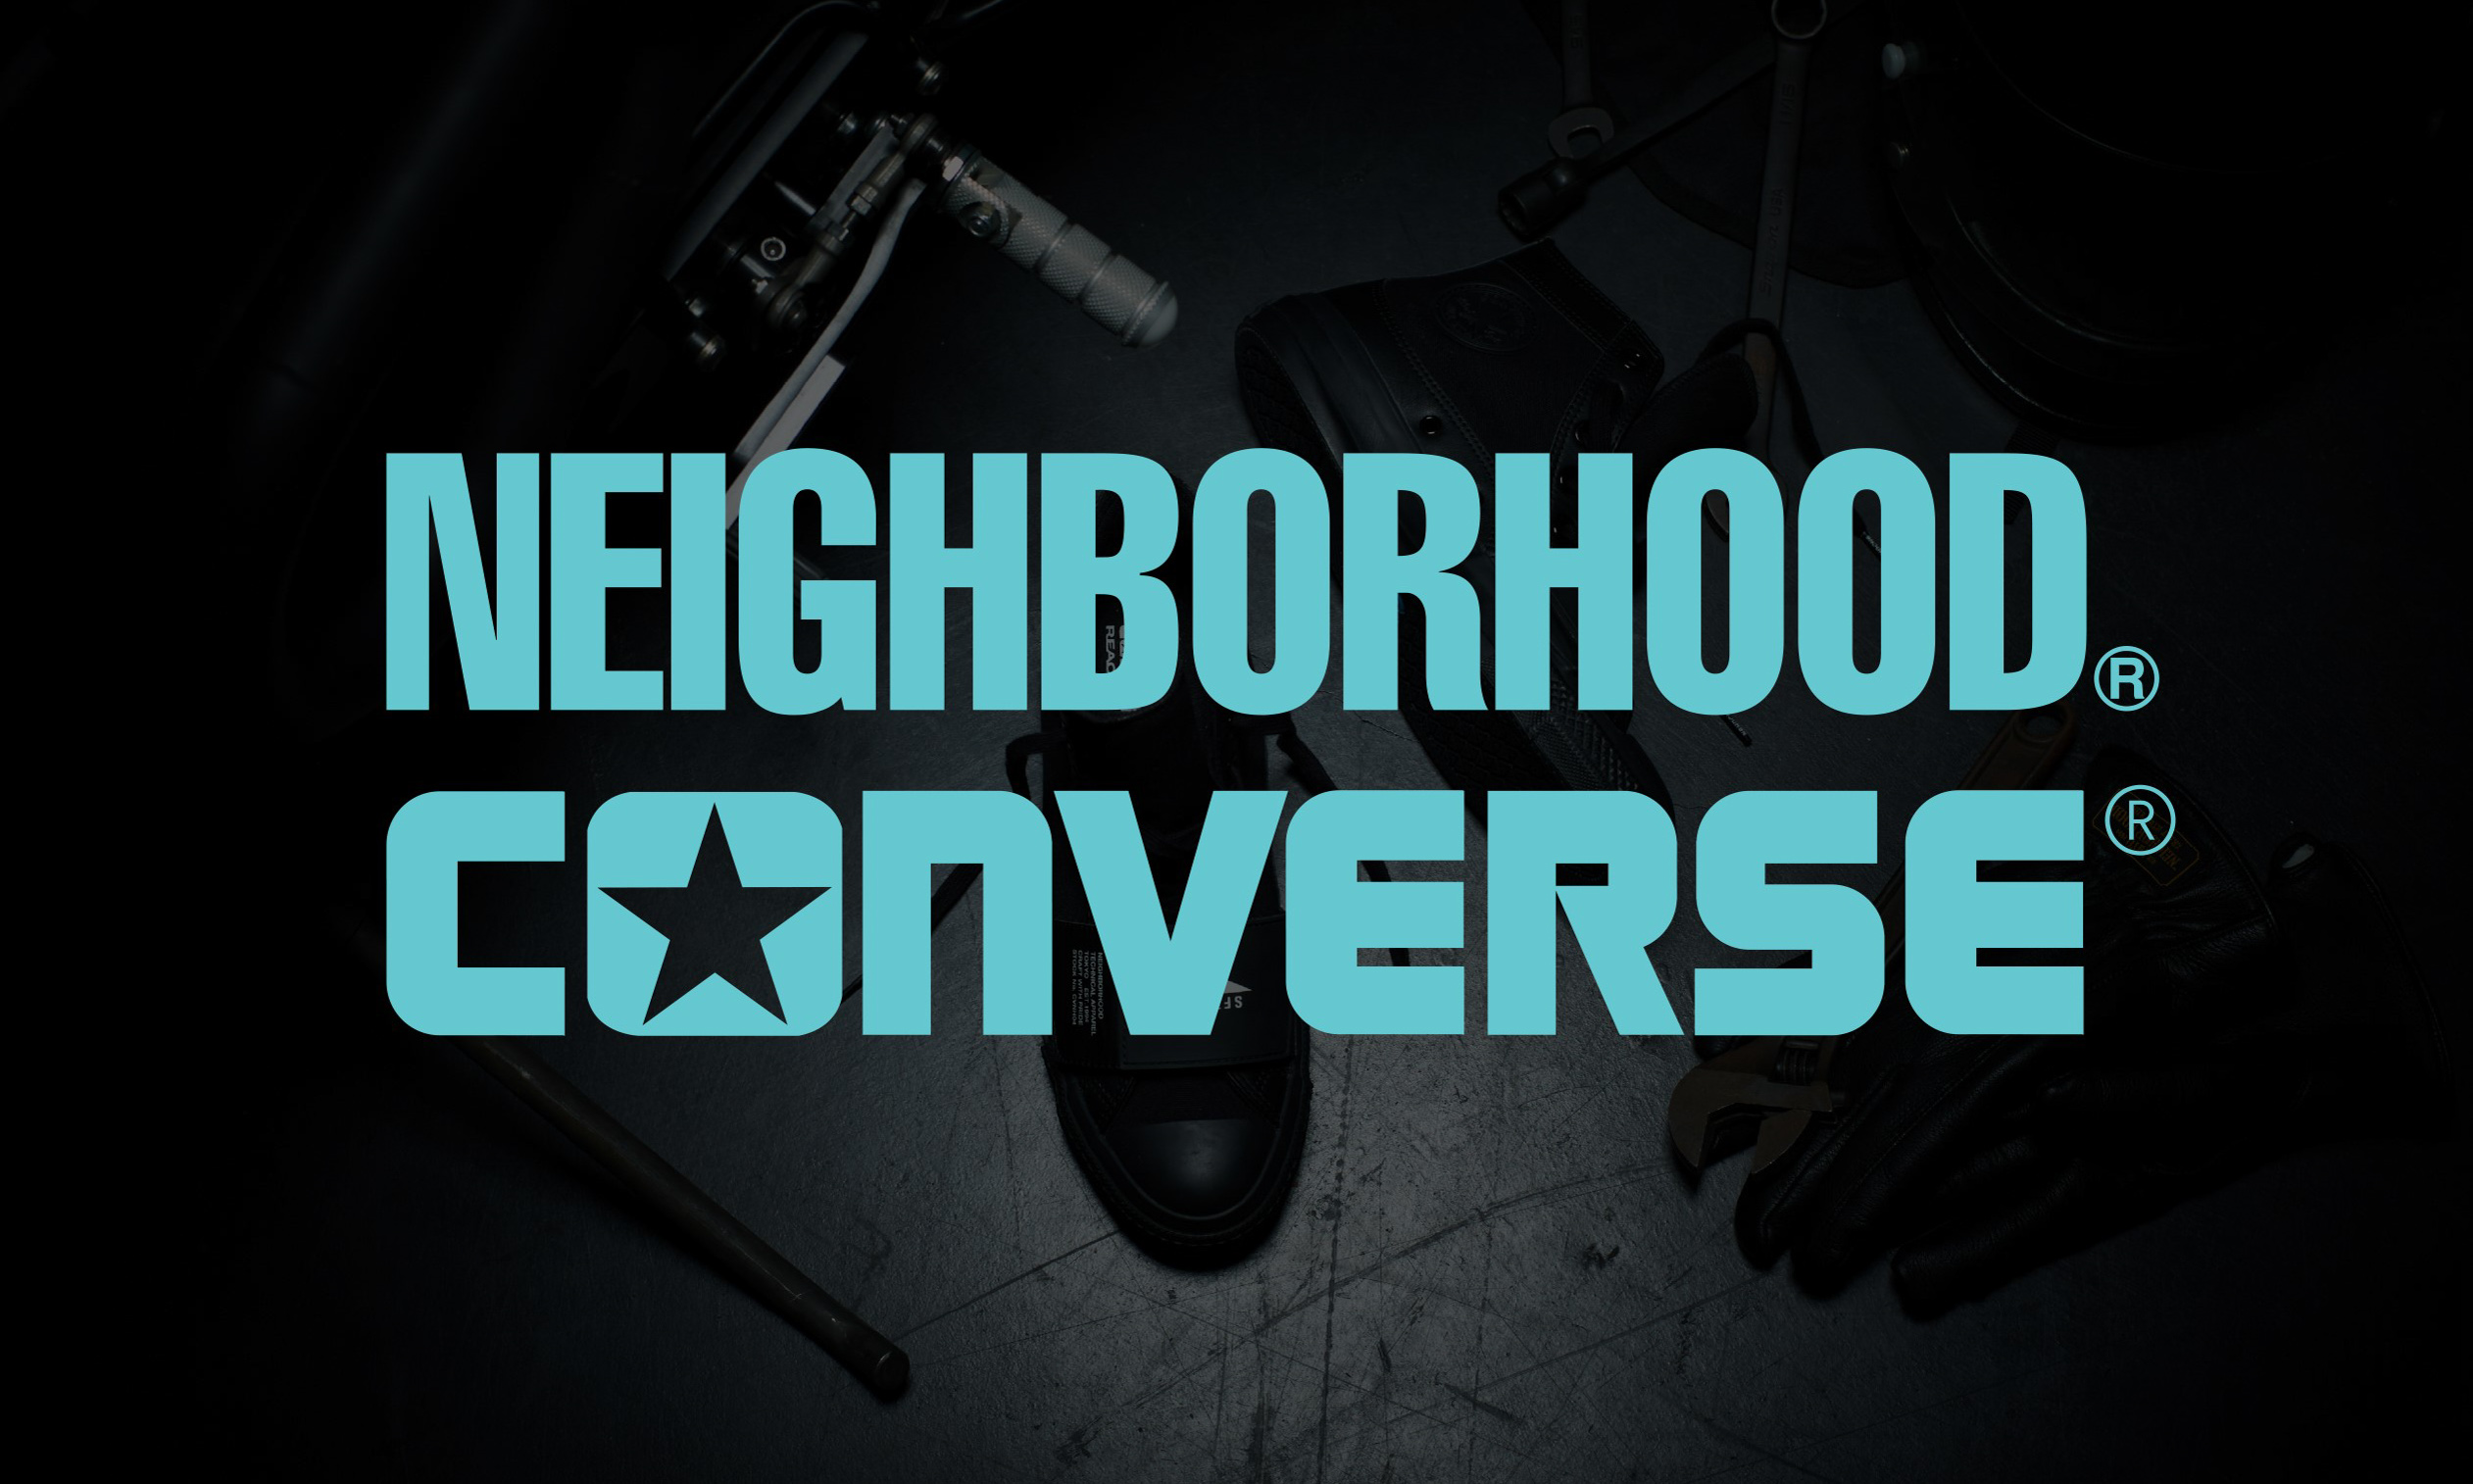 NEIGHBORHOOD x CONVERSE 联名系列宣传影片释出